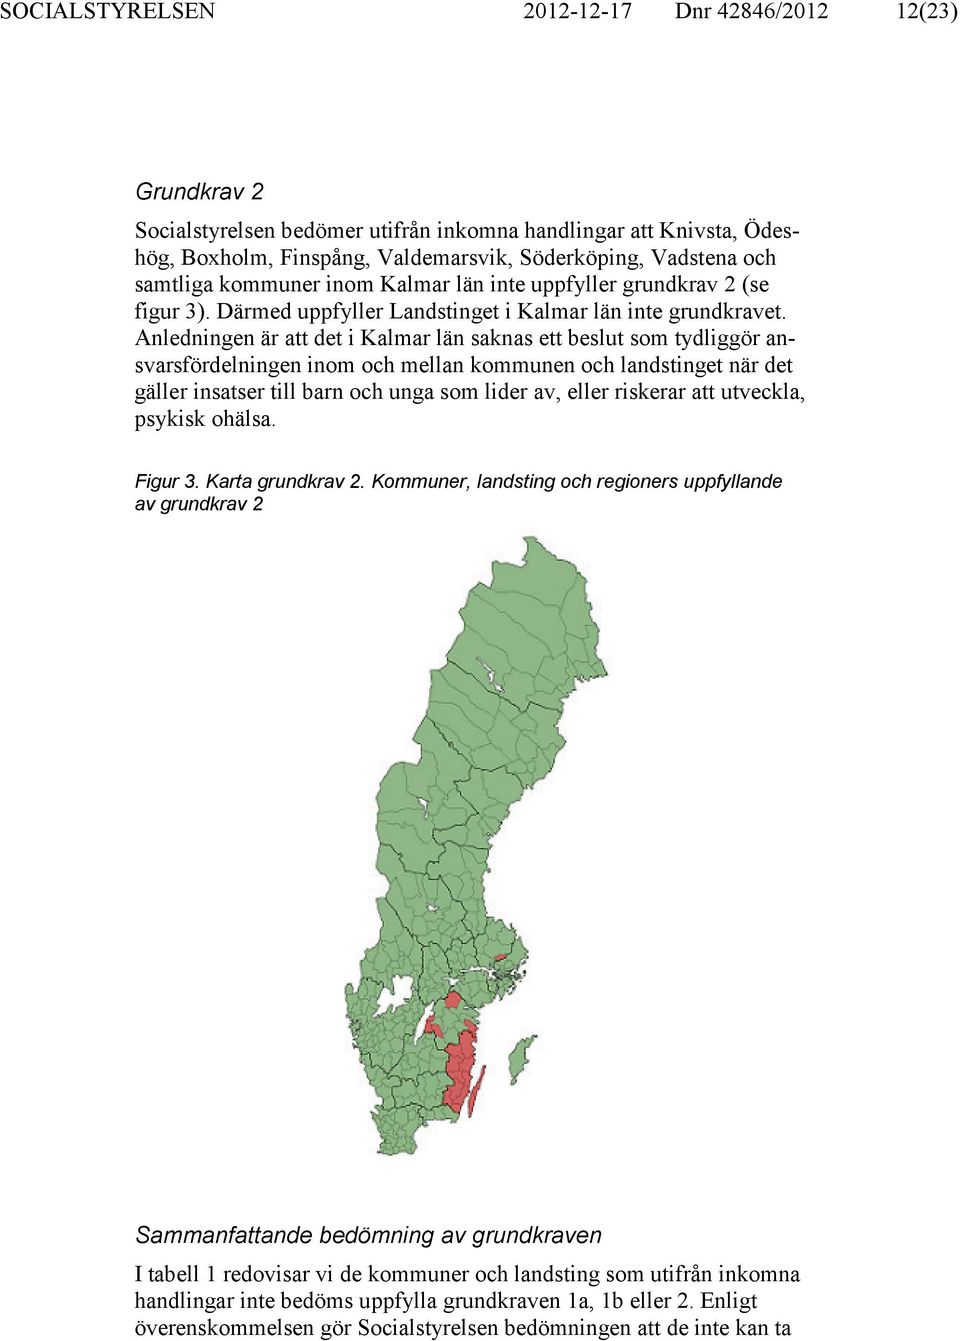 Anledningen är att det i Kalmar län saknas ett beslut som tydliggör ansvarsfördelningen inom och mellan kommunen och landstinget när det gäller insatser till barn och unga som lider av, eller